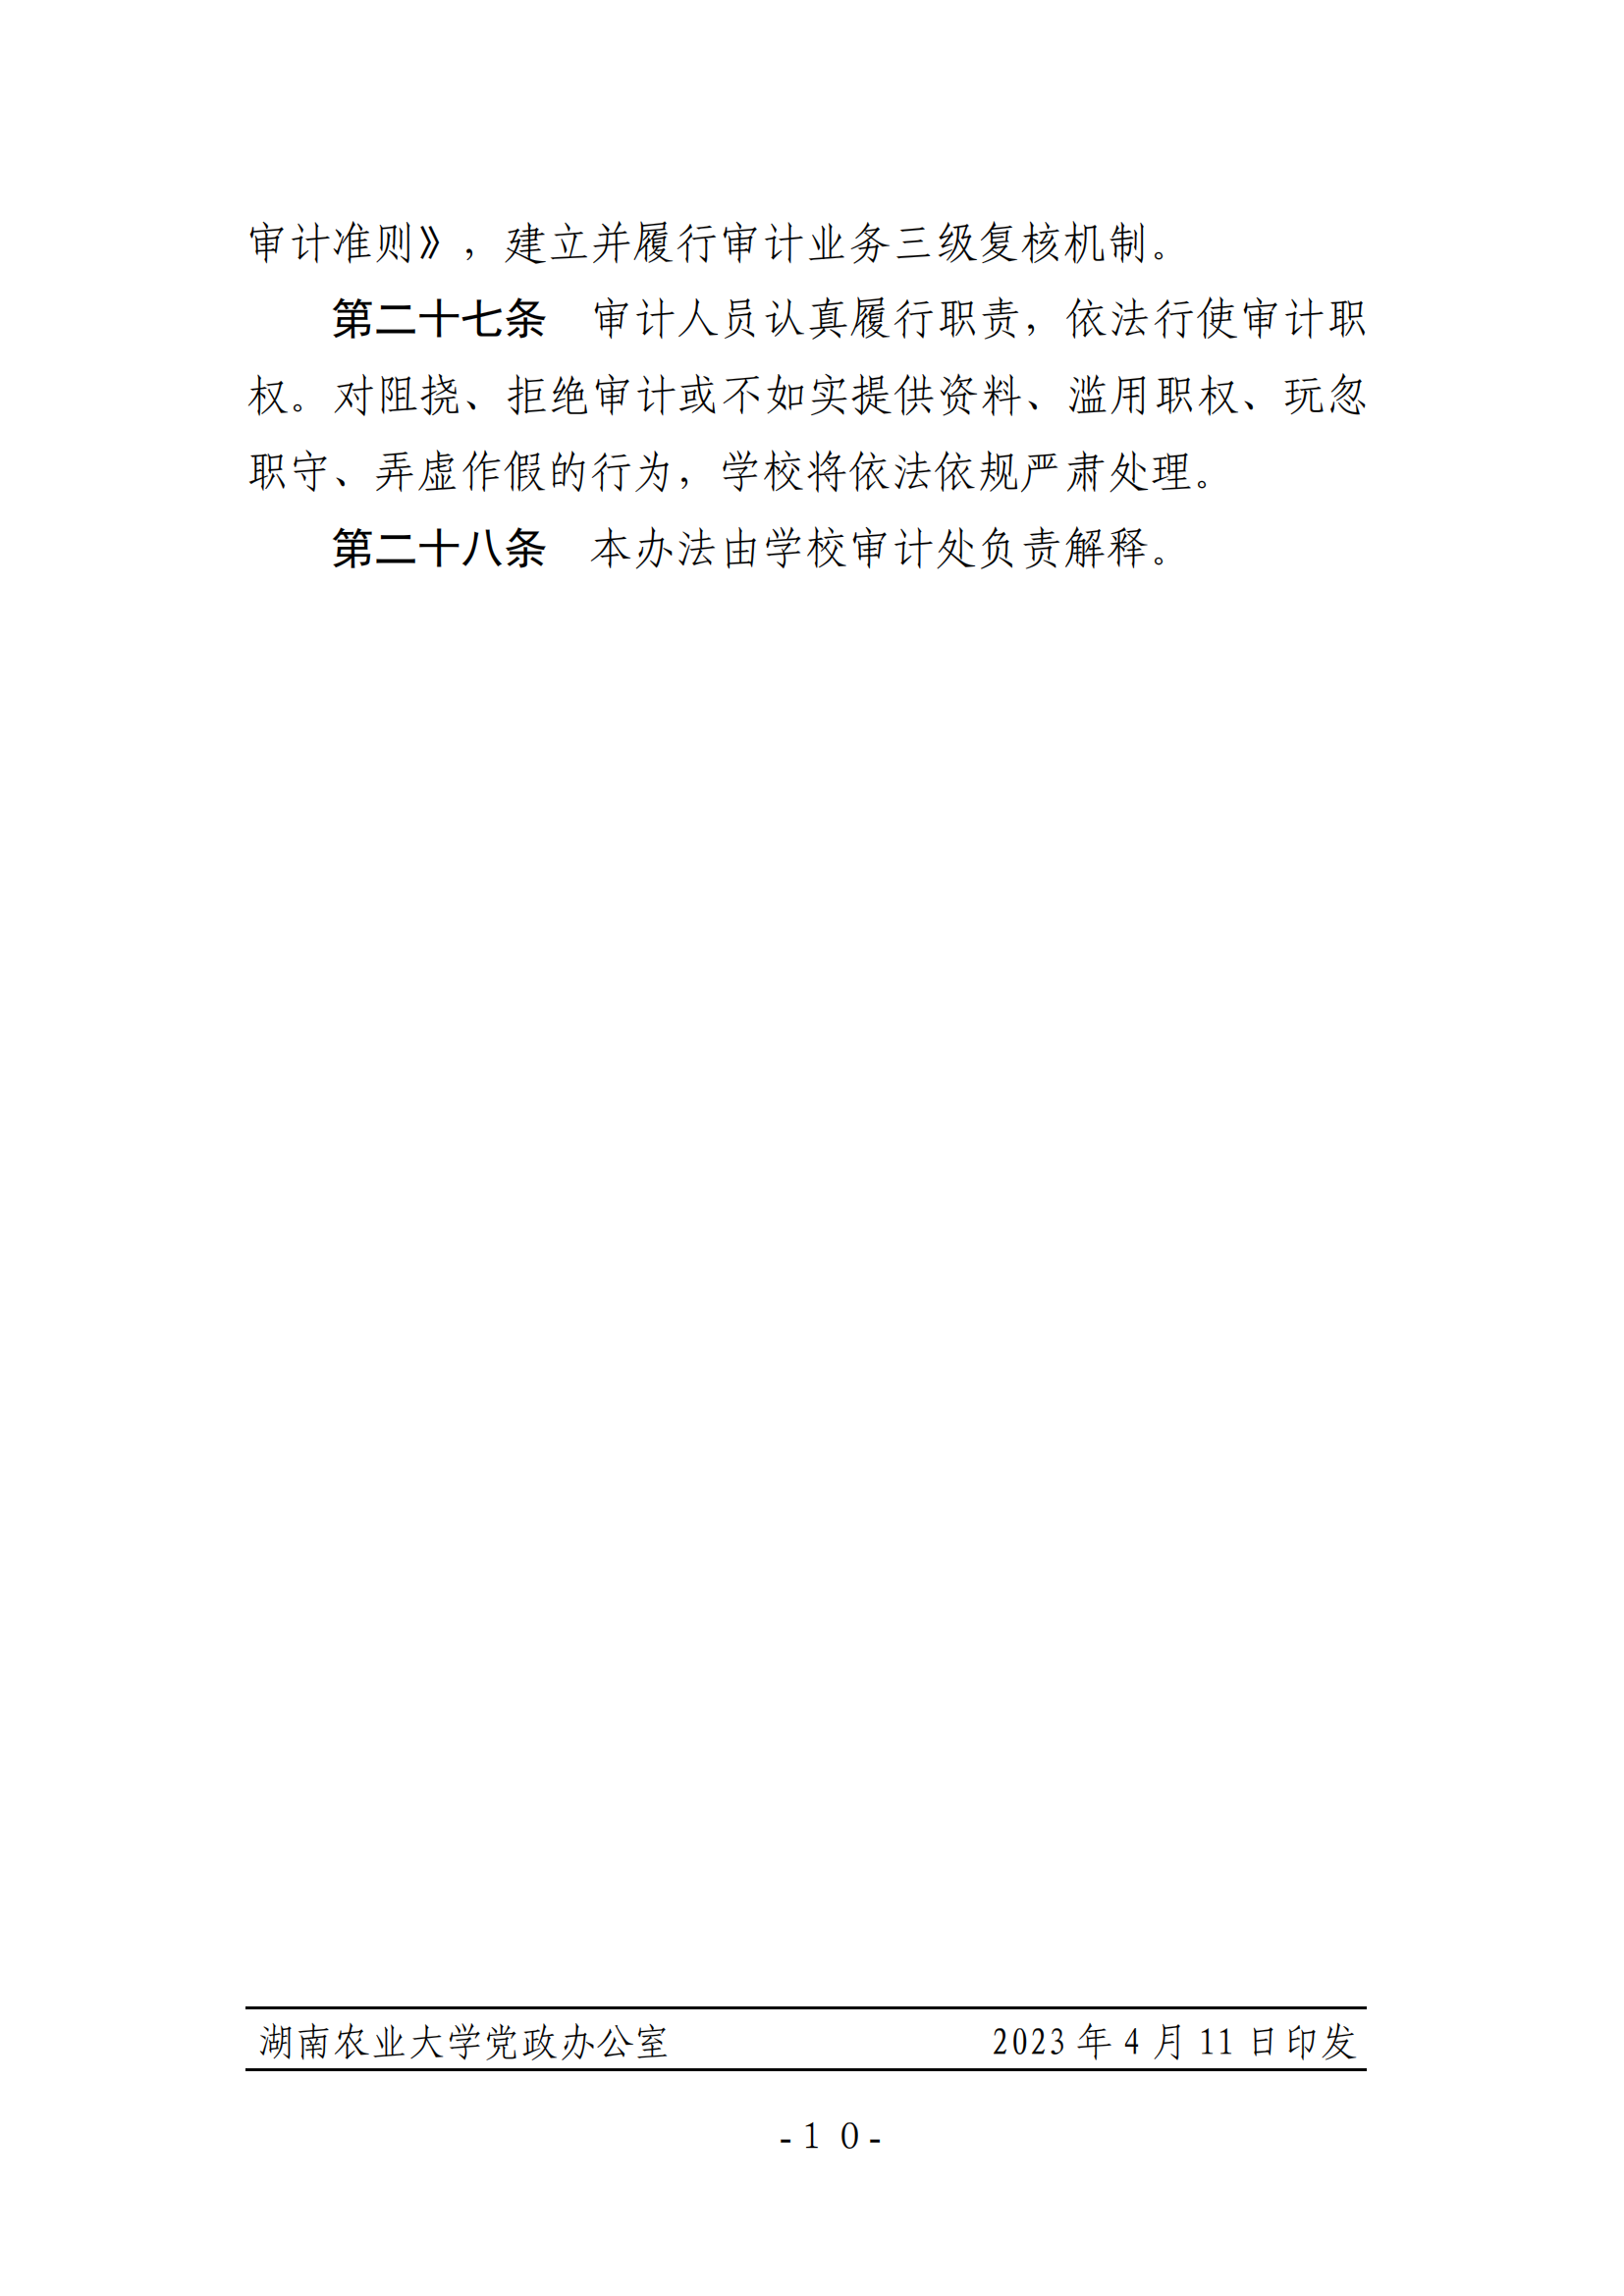 关于印发《湖南农业大学基建、修缮工程项目审计实施办法》的通知-正文_09.png